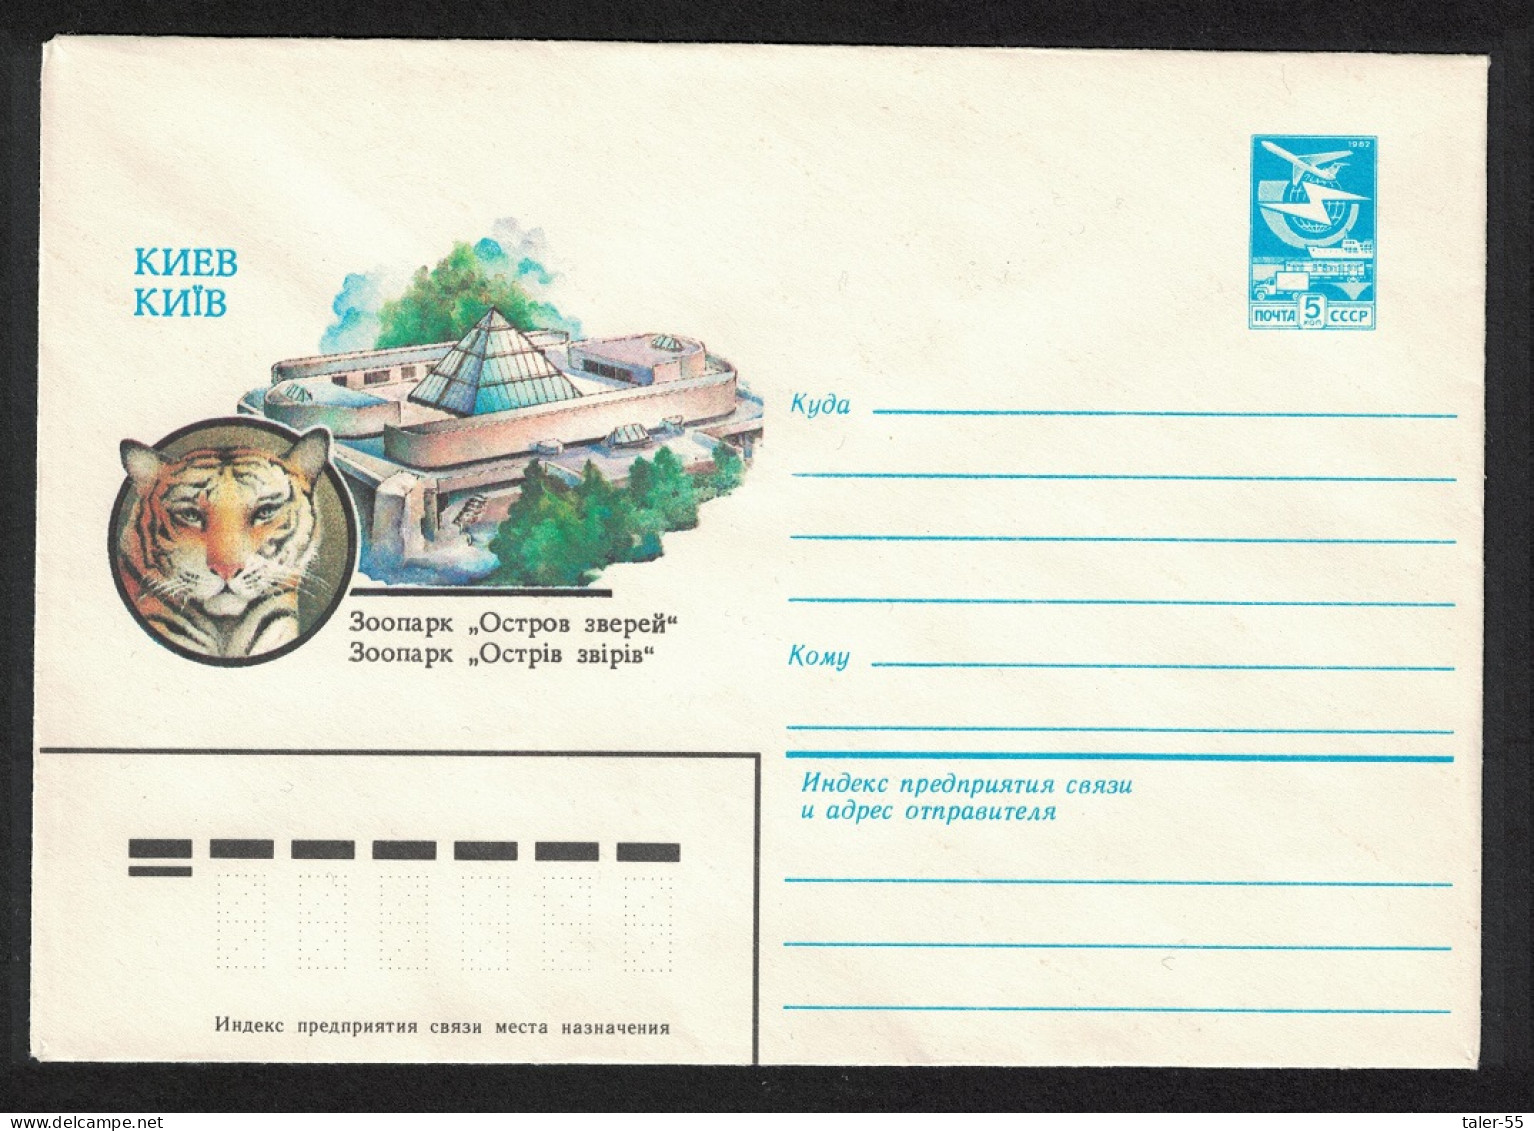 USSR Tiger Kiev Zoo Pre-paid Envelope 1983 - Usati